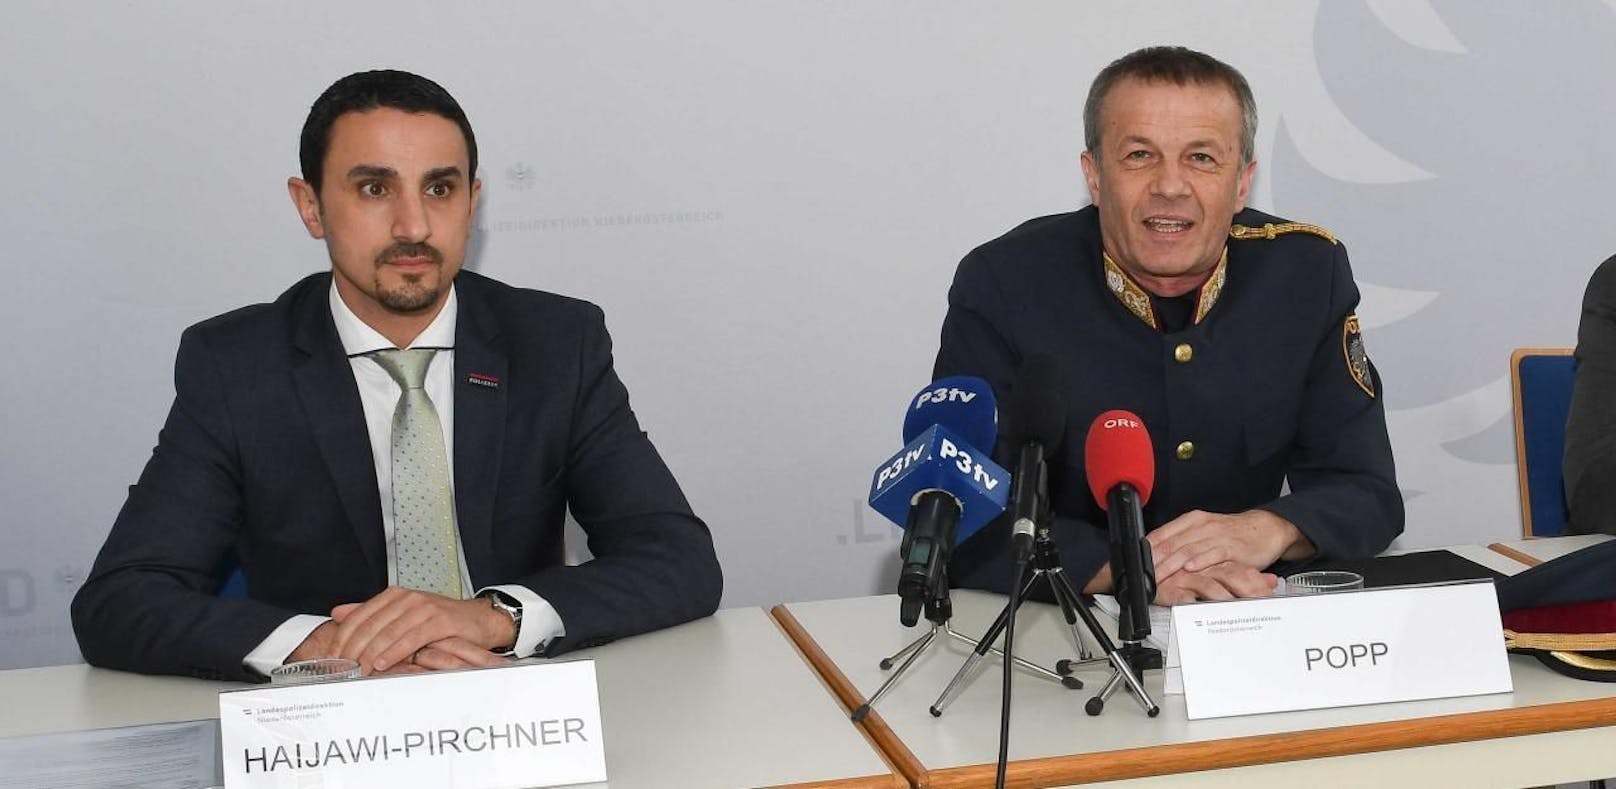 Haijawi-Pirchner und Popp bei der Pressekonferenz.